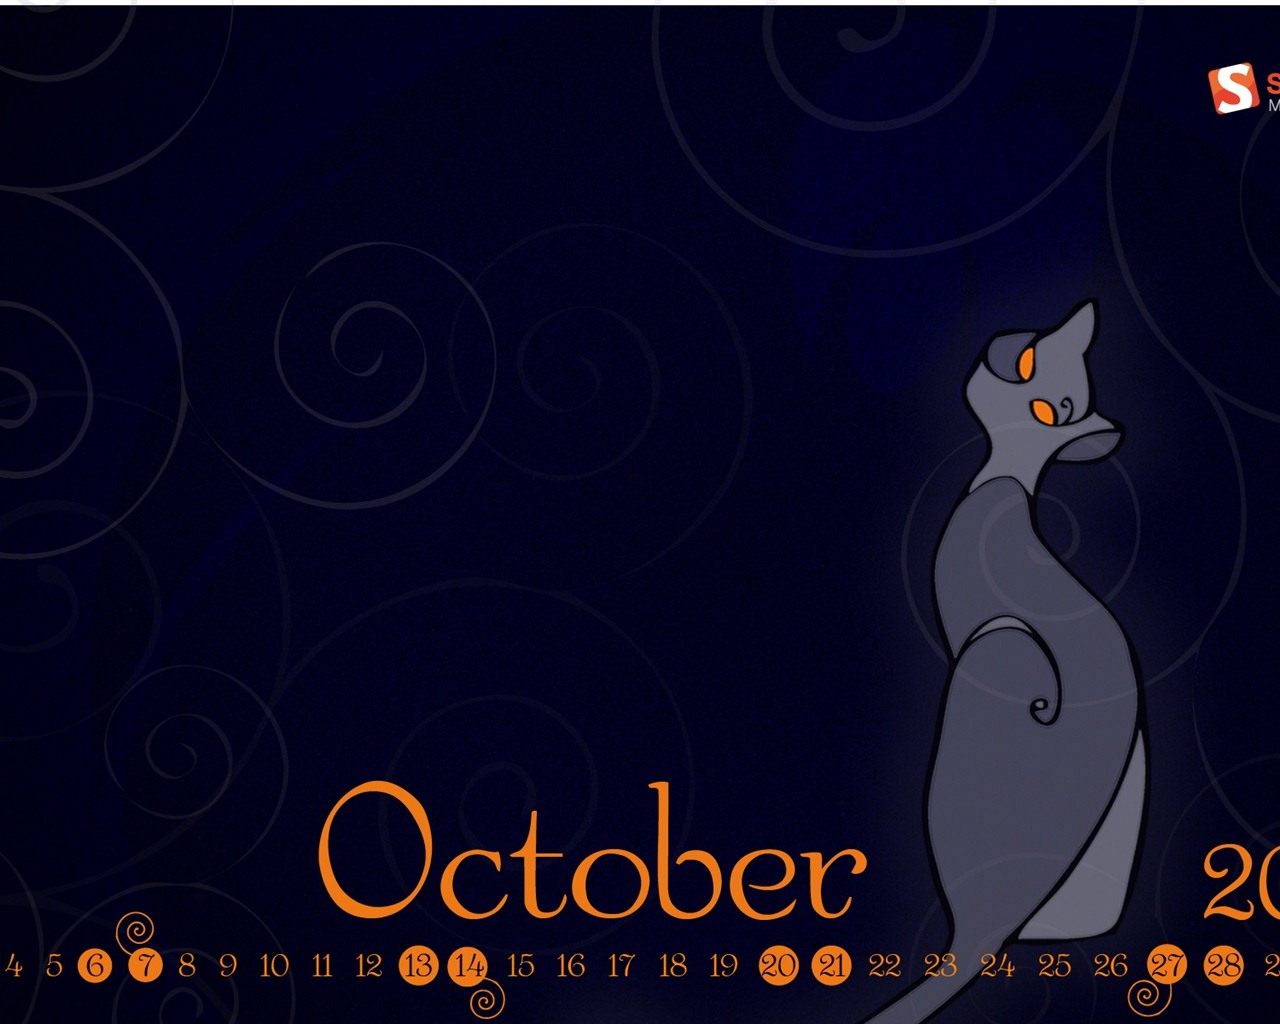 Octobre 2012 Calendar Wallpaper (1) #8 - 1280x1024